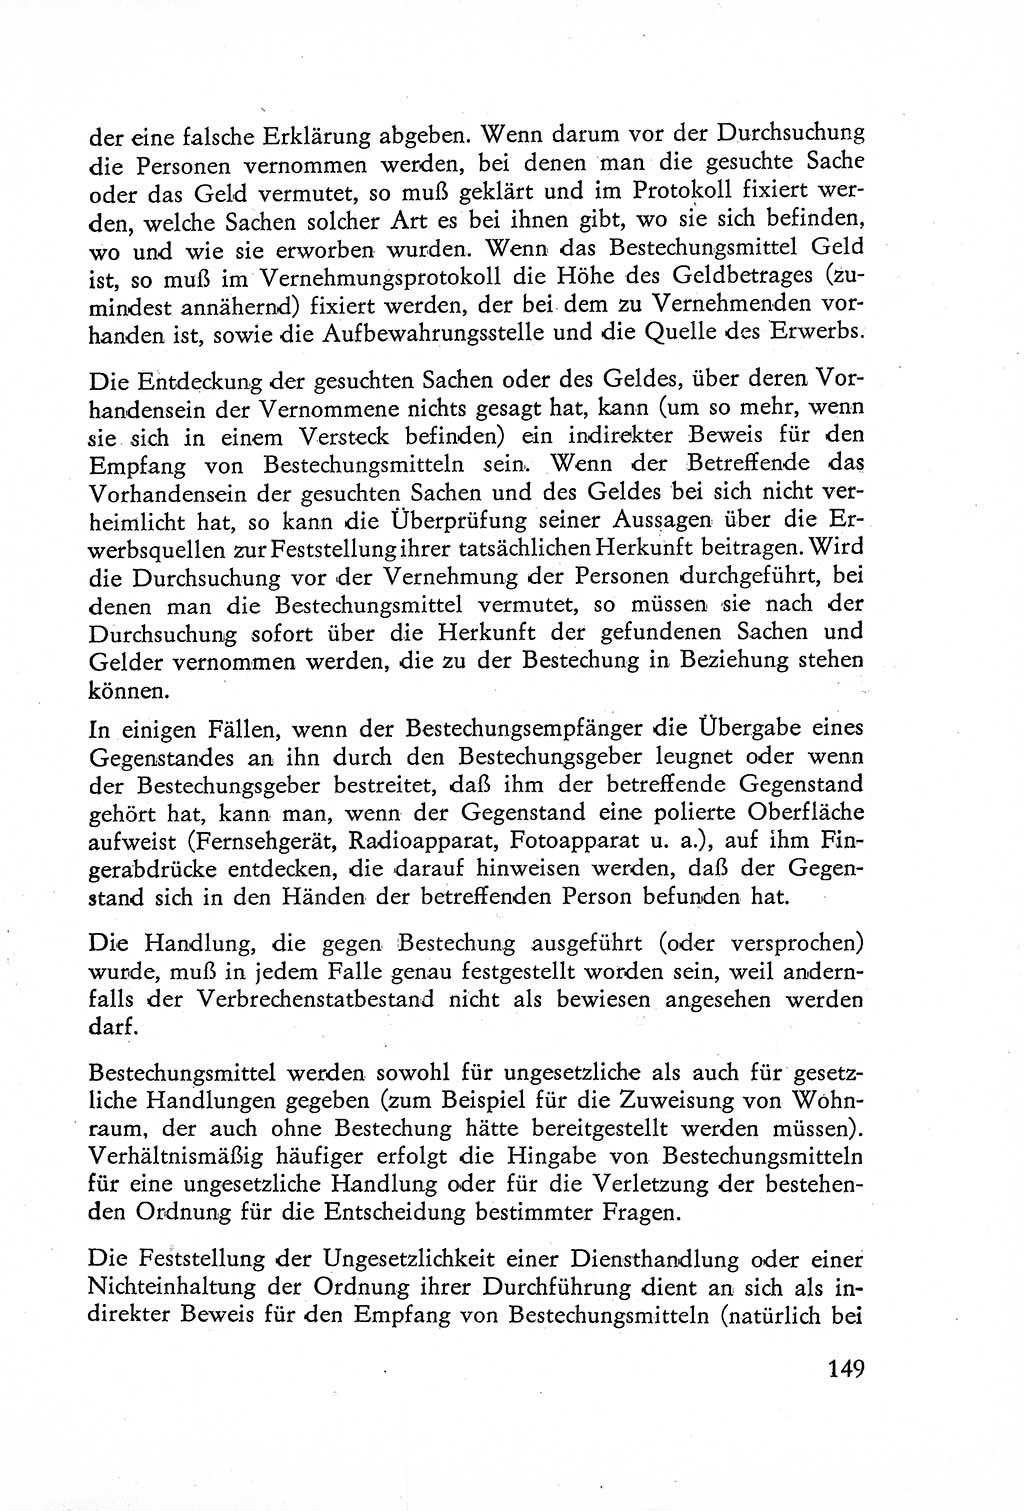 Die Untersuchung einzelner Verbrechensarten [Deutsche Demokratische Republik (DDR)] 1960, Seite 149 (Unters. Verbr.-Art. DDR 1960, S. 149)